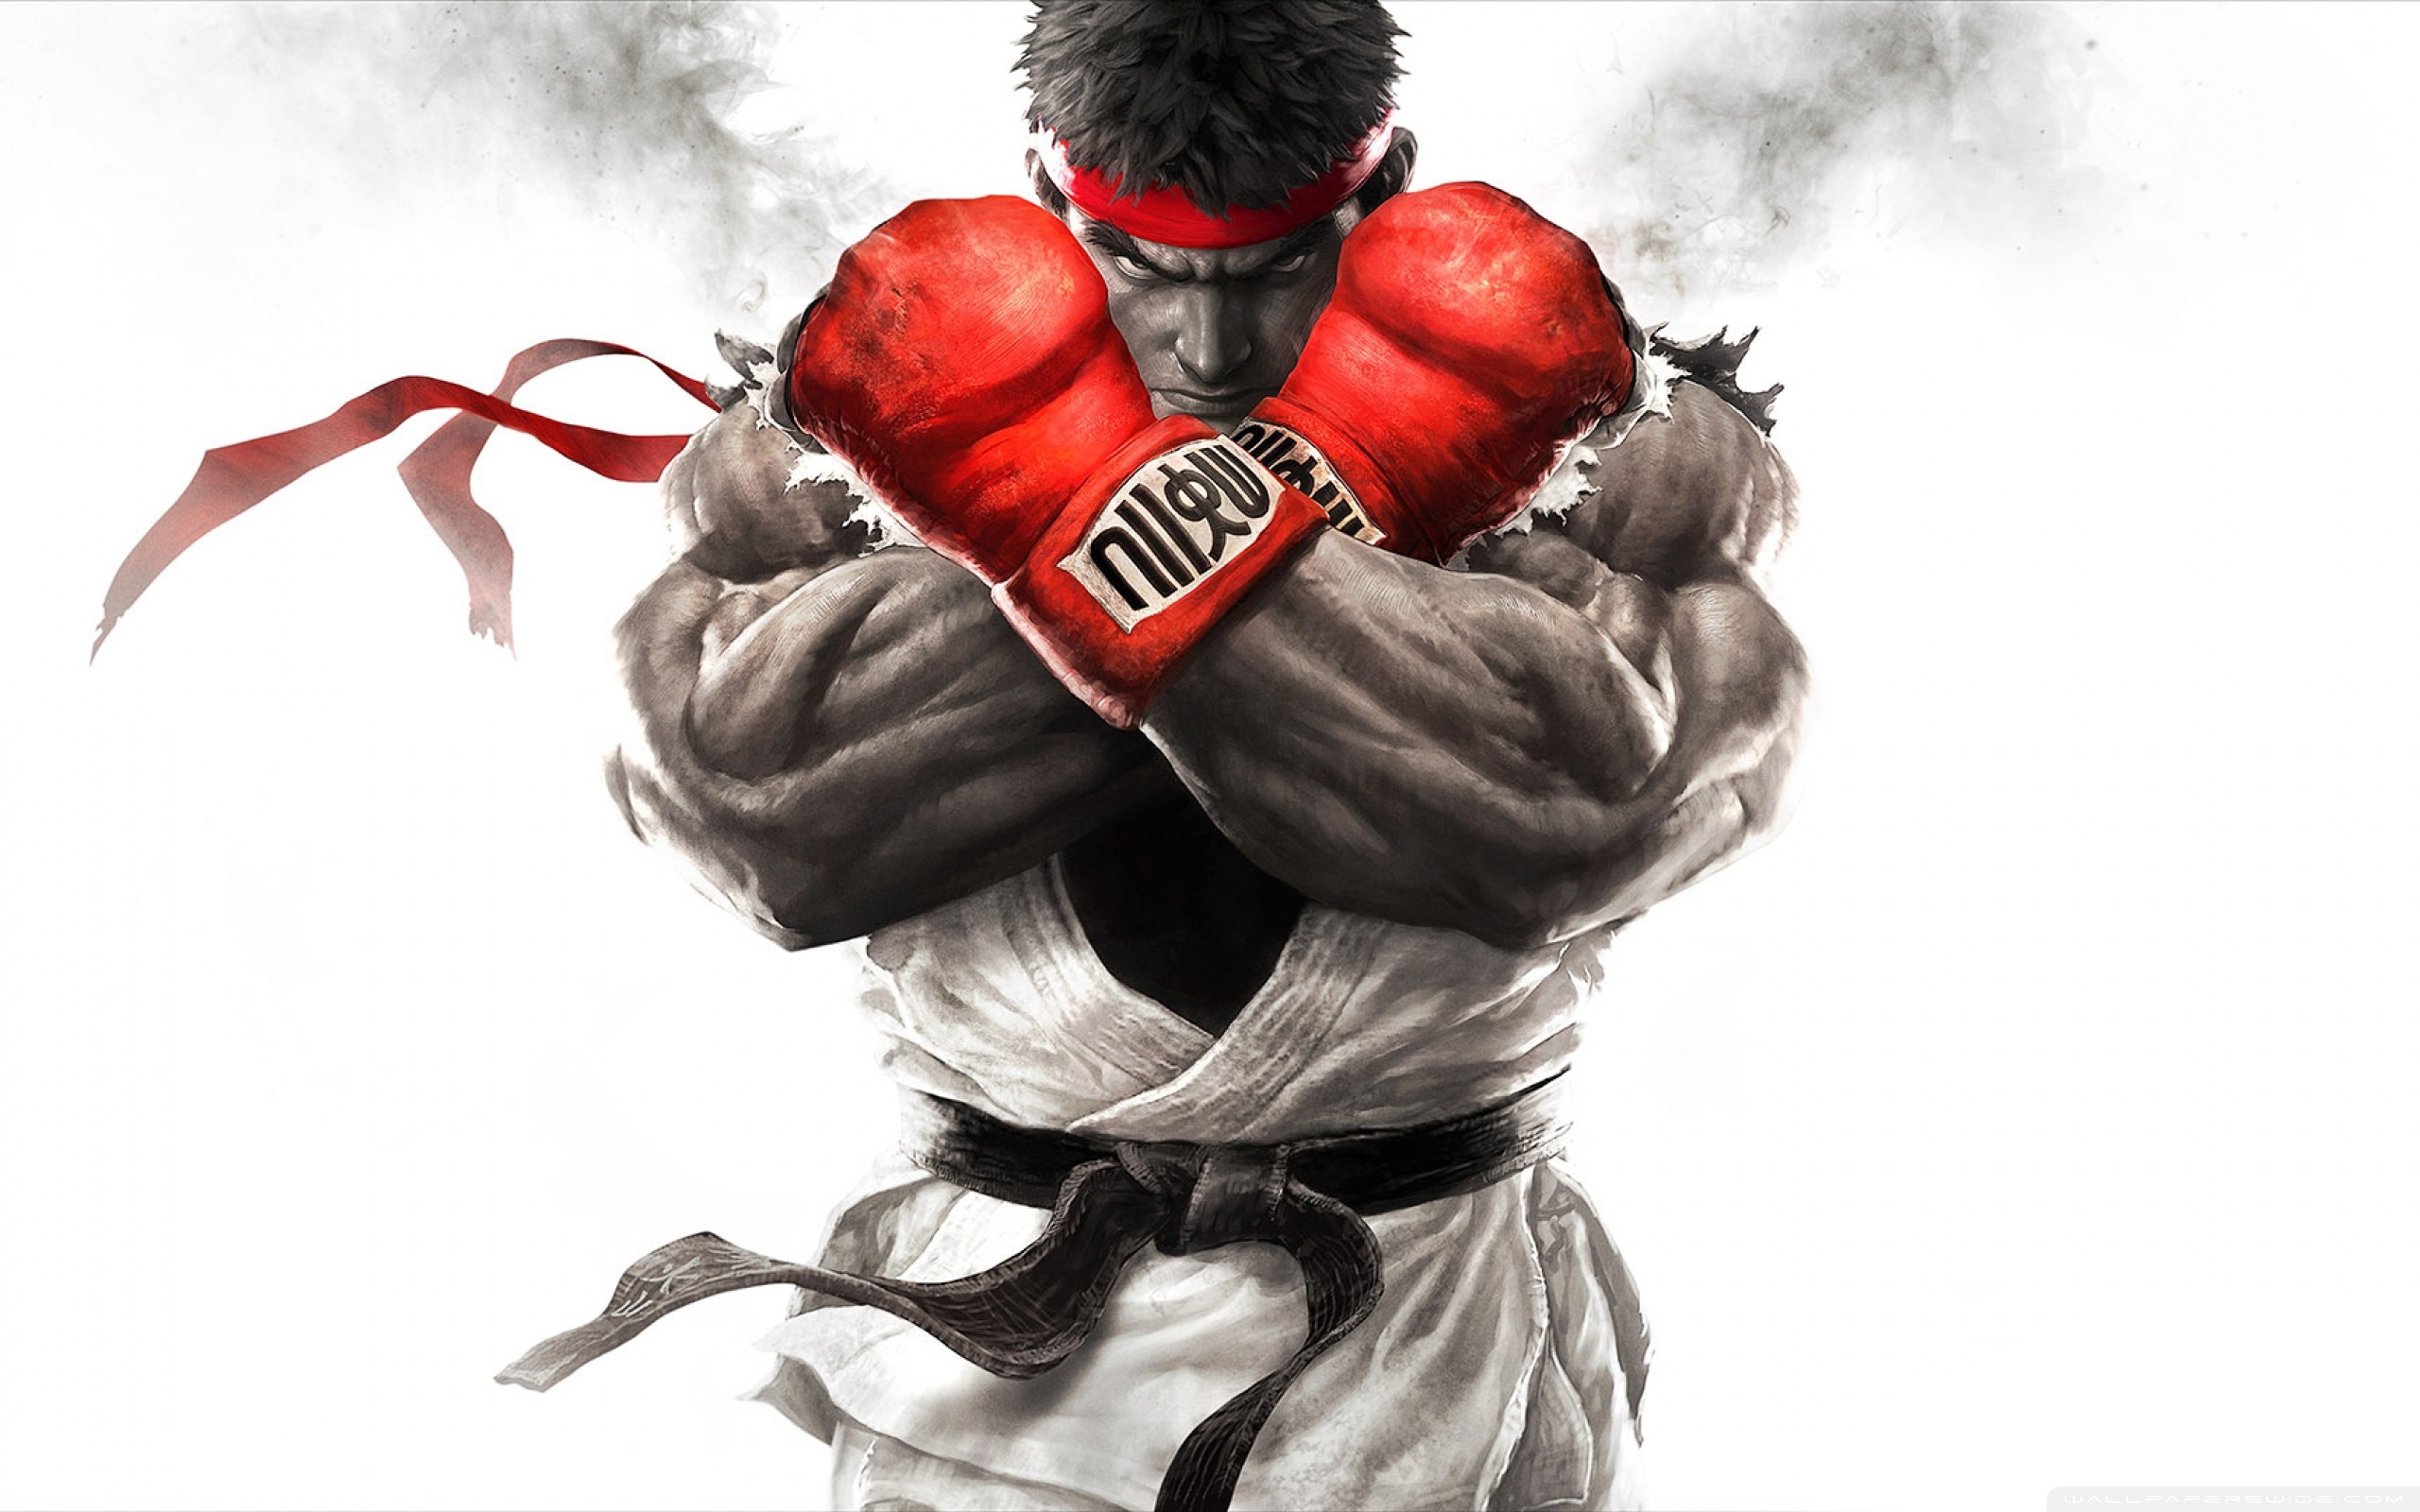 Image: Street Fighter V, Ryu, fighter, red armband, black belt, look